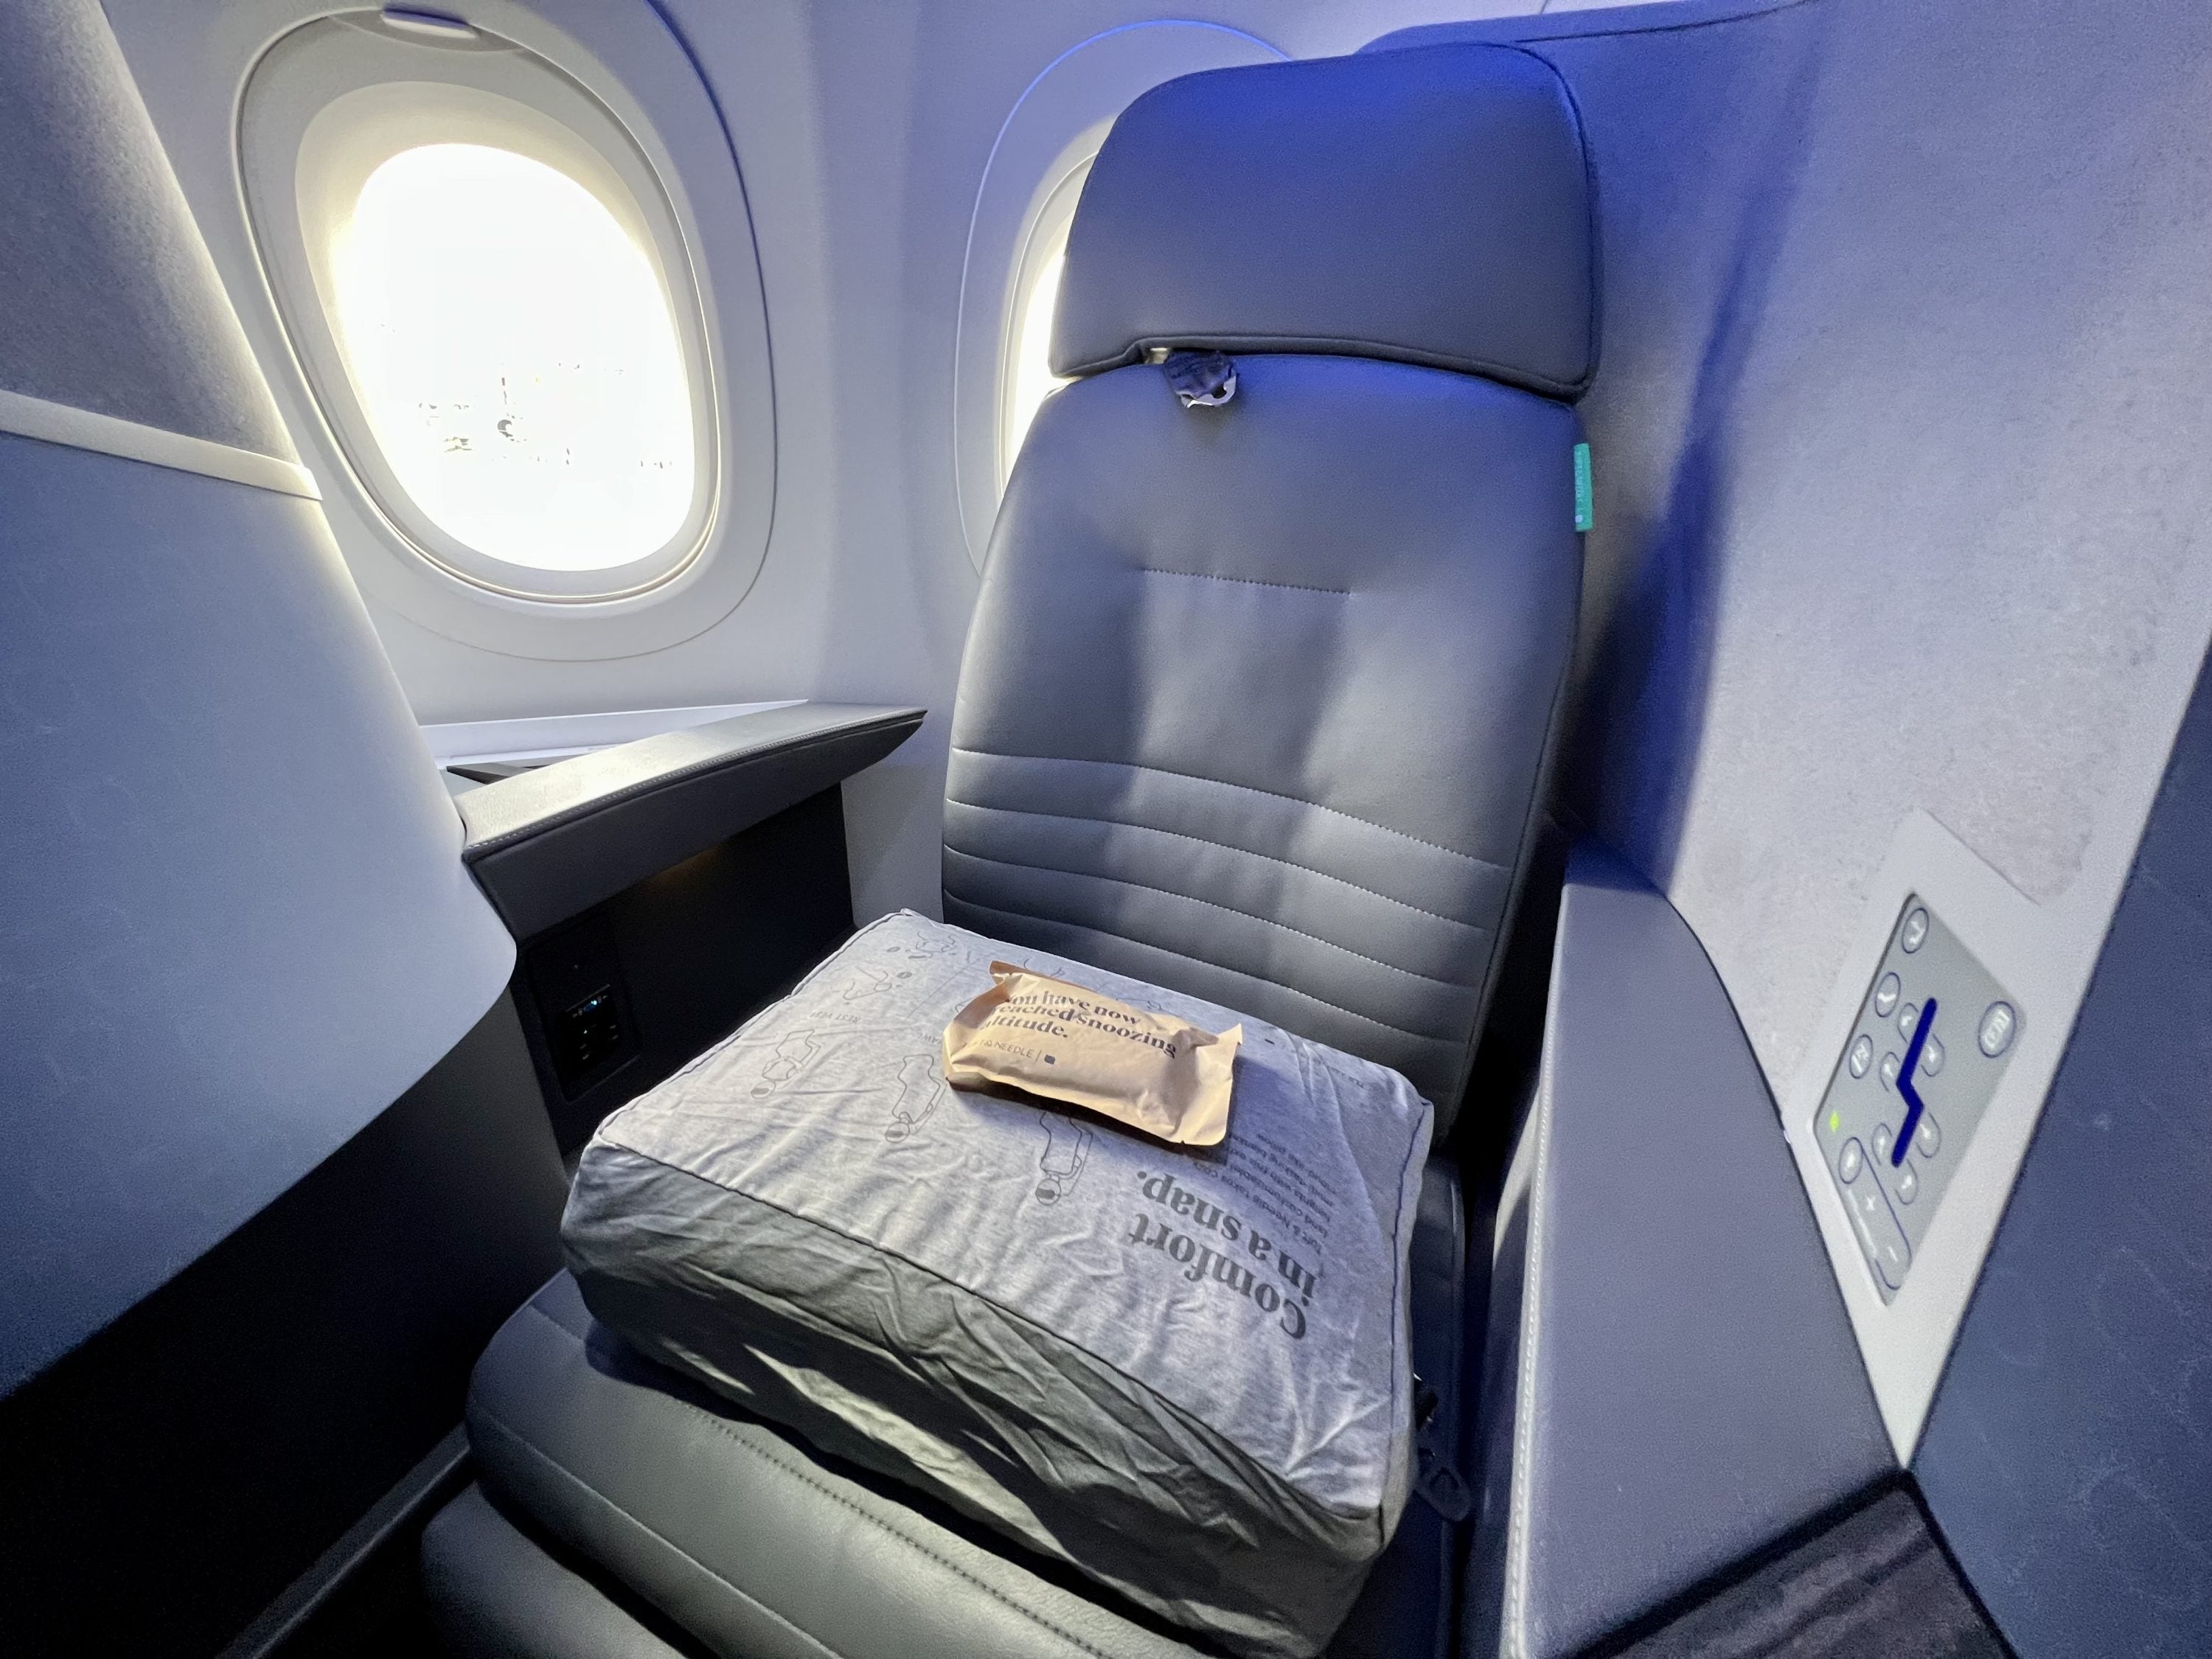 JetBlue Mint A321LR Seat 2F close up